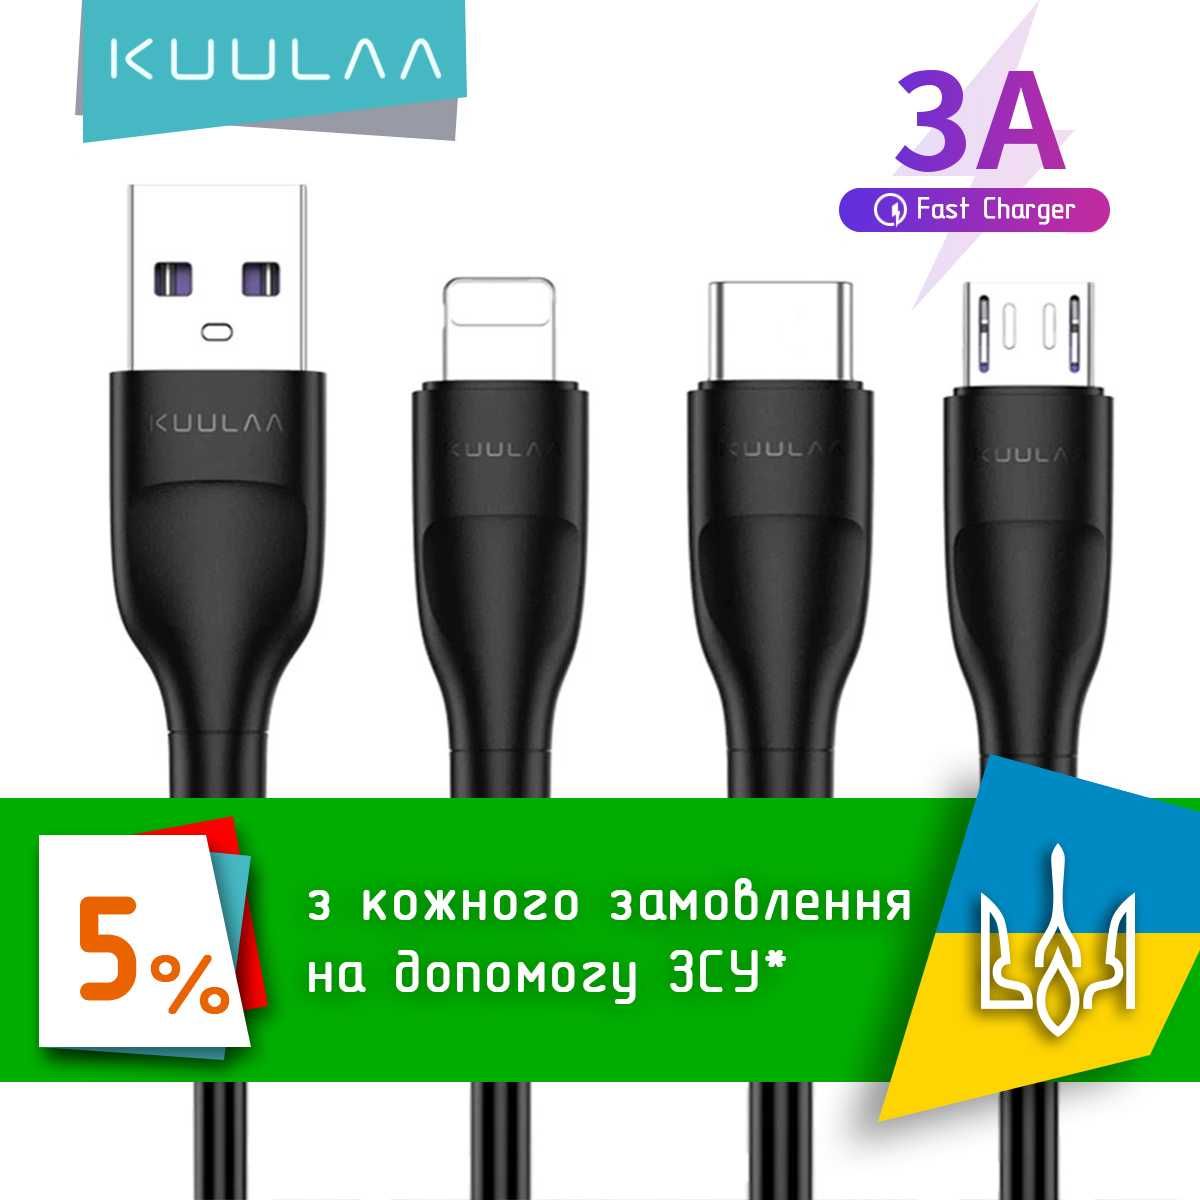 Оригинальный USB-кабель KUULAA с быстрой зарядкой и передачей данных